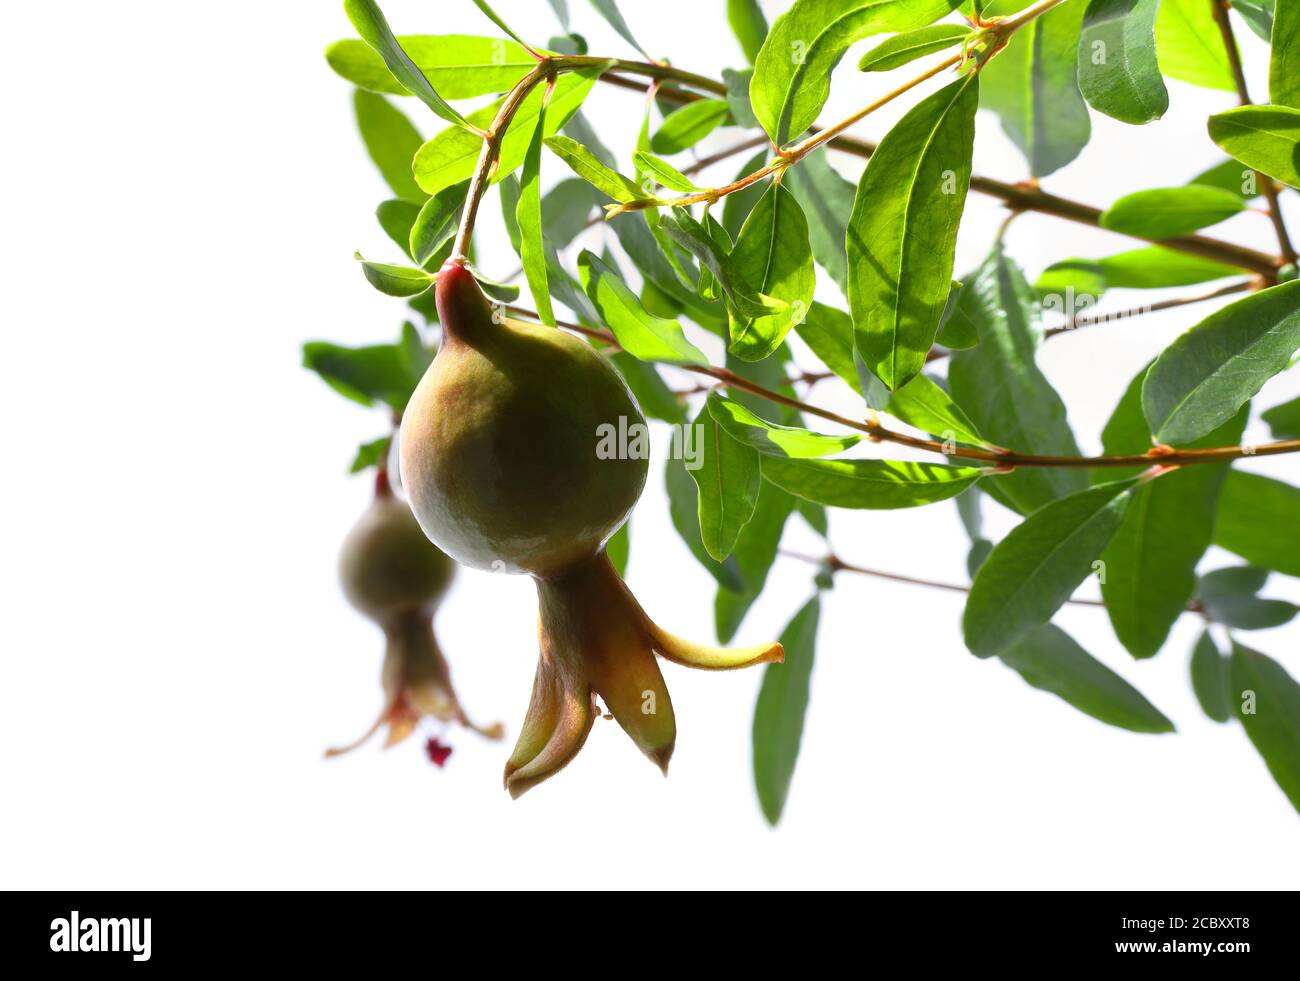 Primo piano di due frutti di melograno verde maturo sul ramo dell'albero su sfondo bianco sotto il sole, DOF selettivo Foto Stock